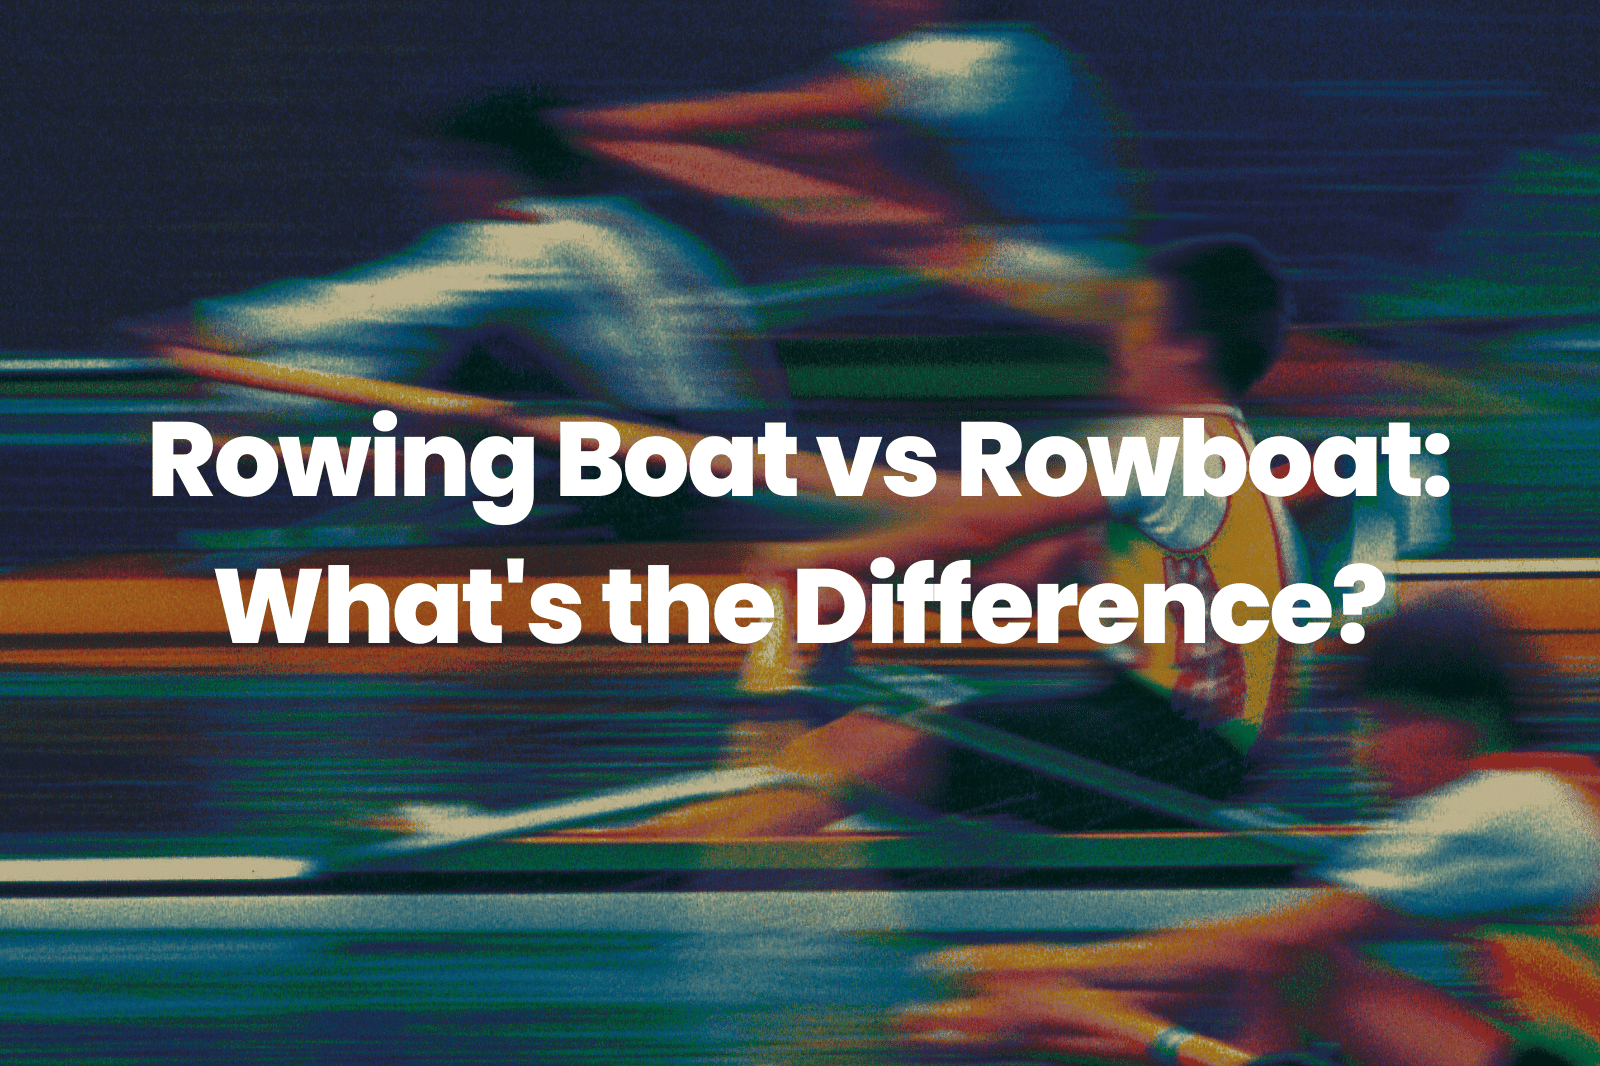 Rowing Boat vs Rowboat